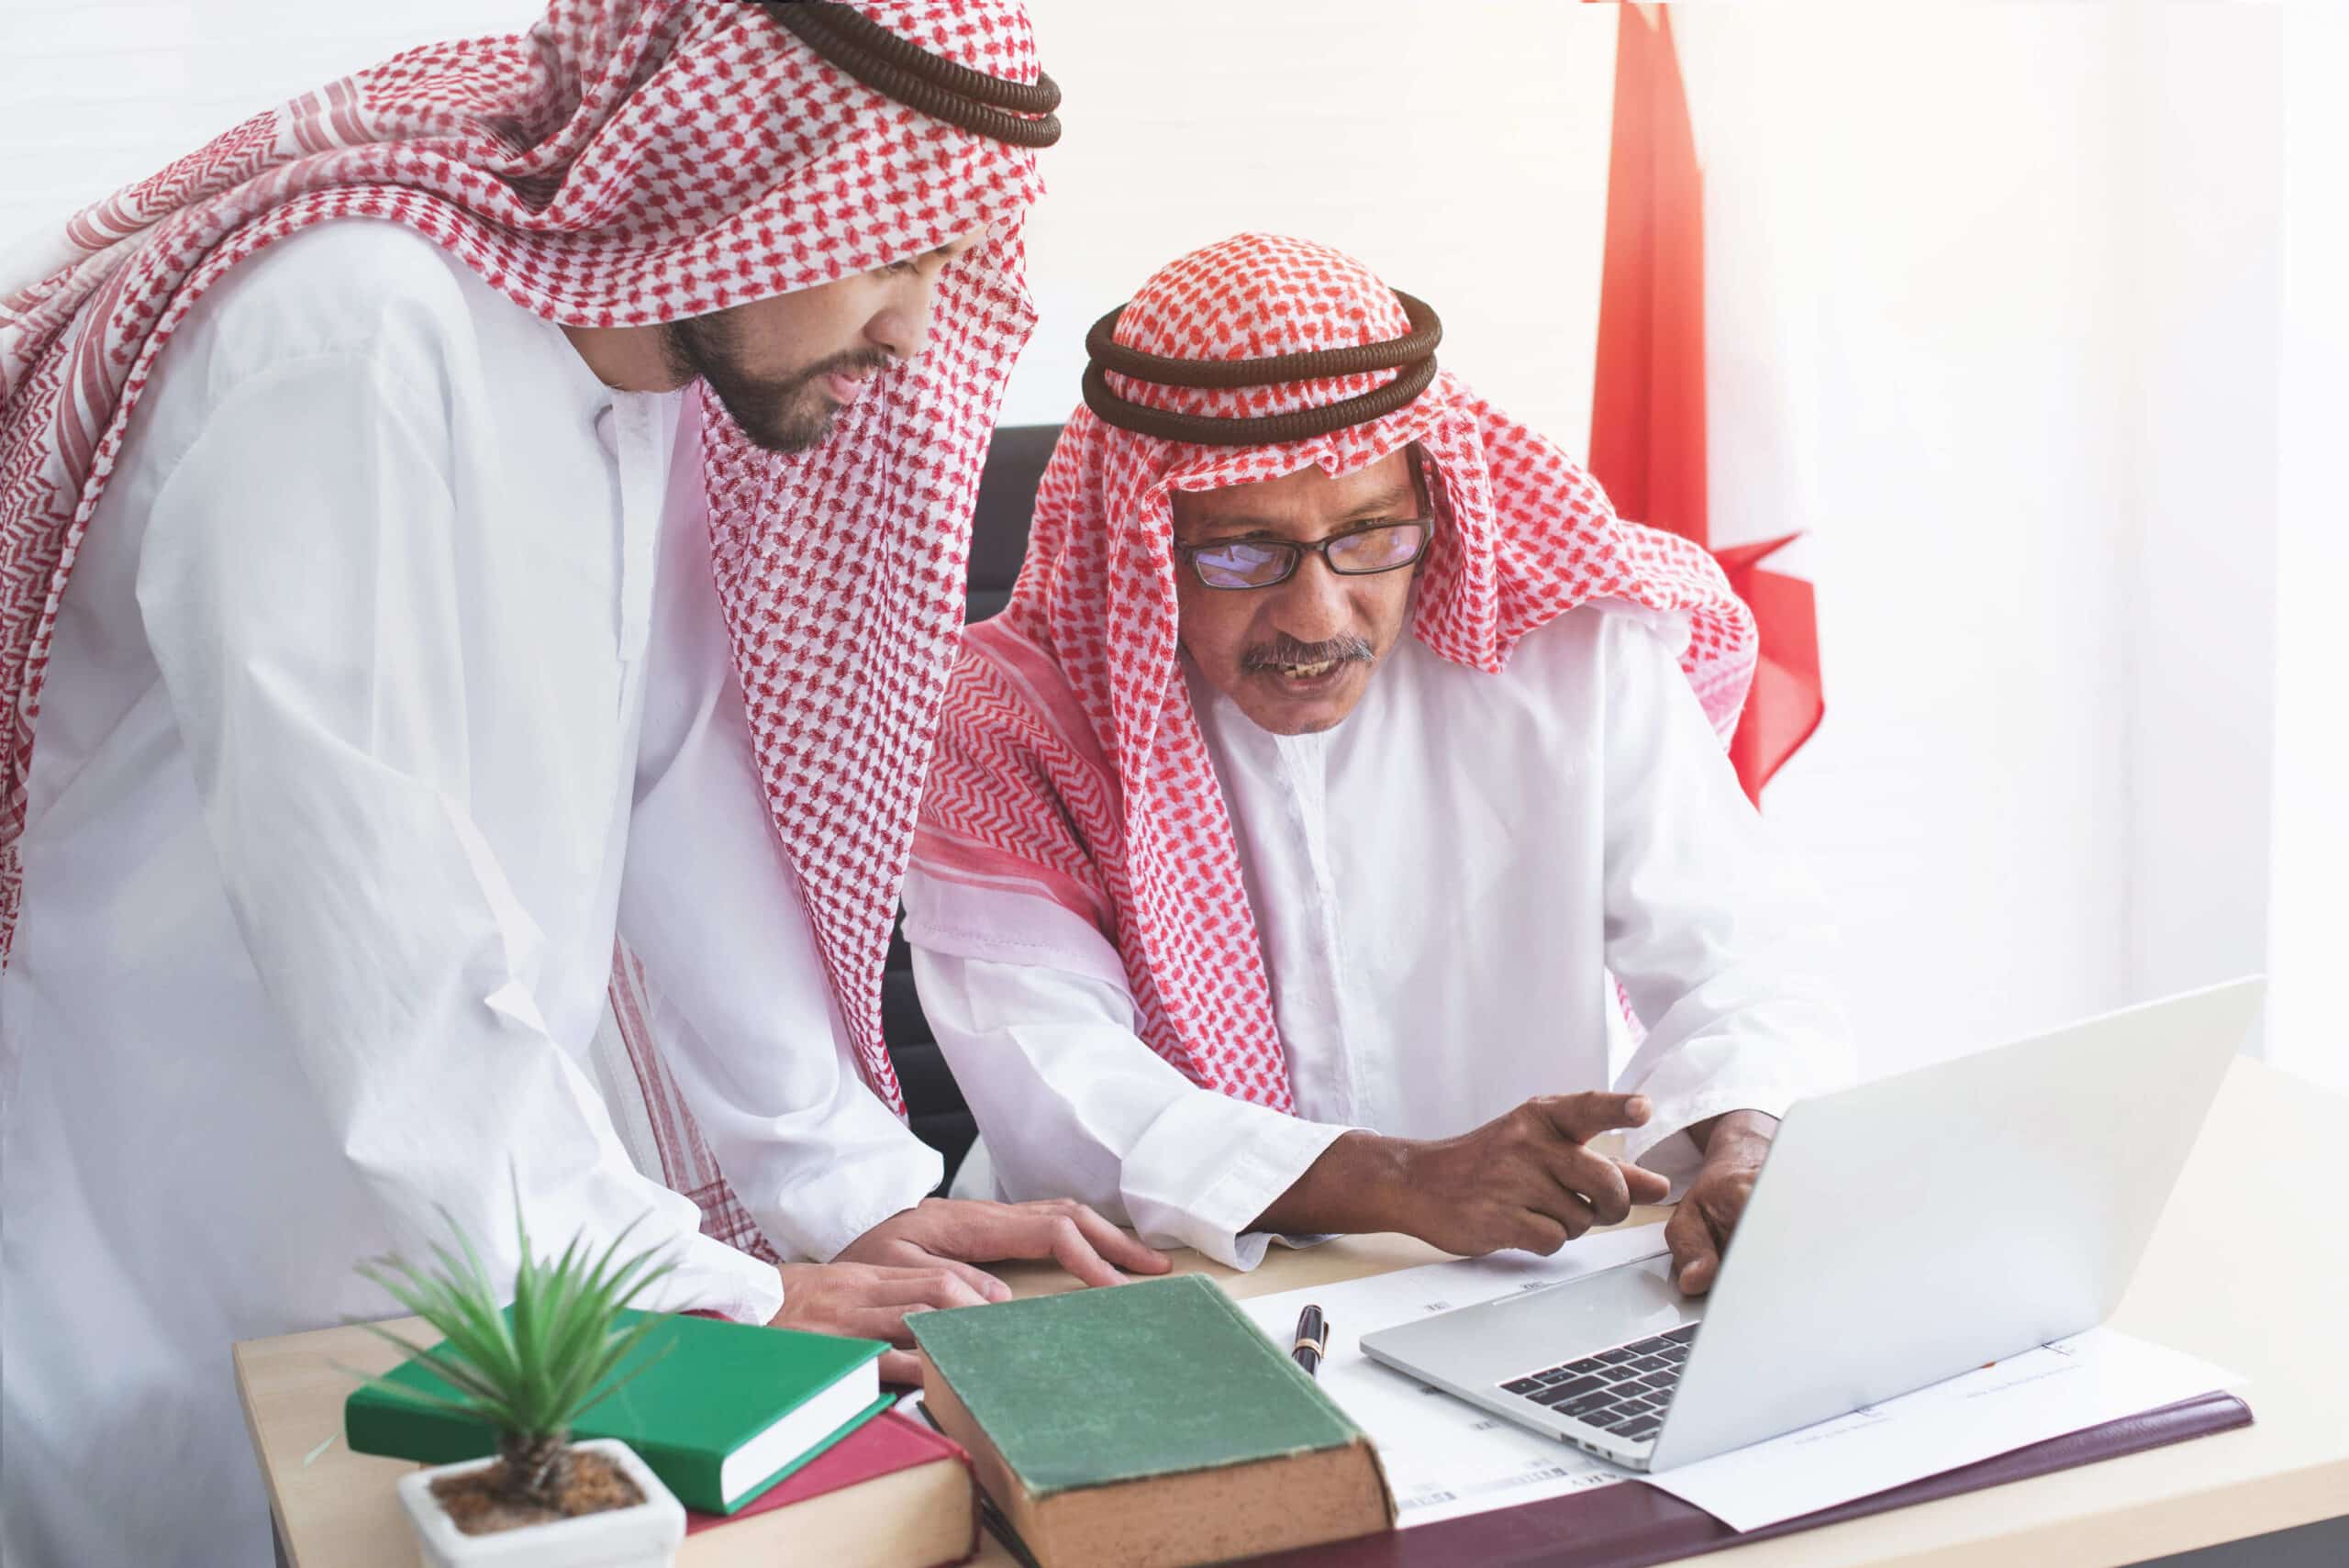 دور التدريب التقني والمهني في تحقيق رؤية المملكة العربية السعودية 2030 ومعالجة مشكلة البطالة: تحديات وفرص